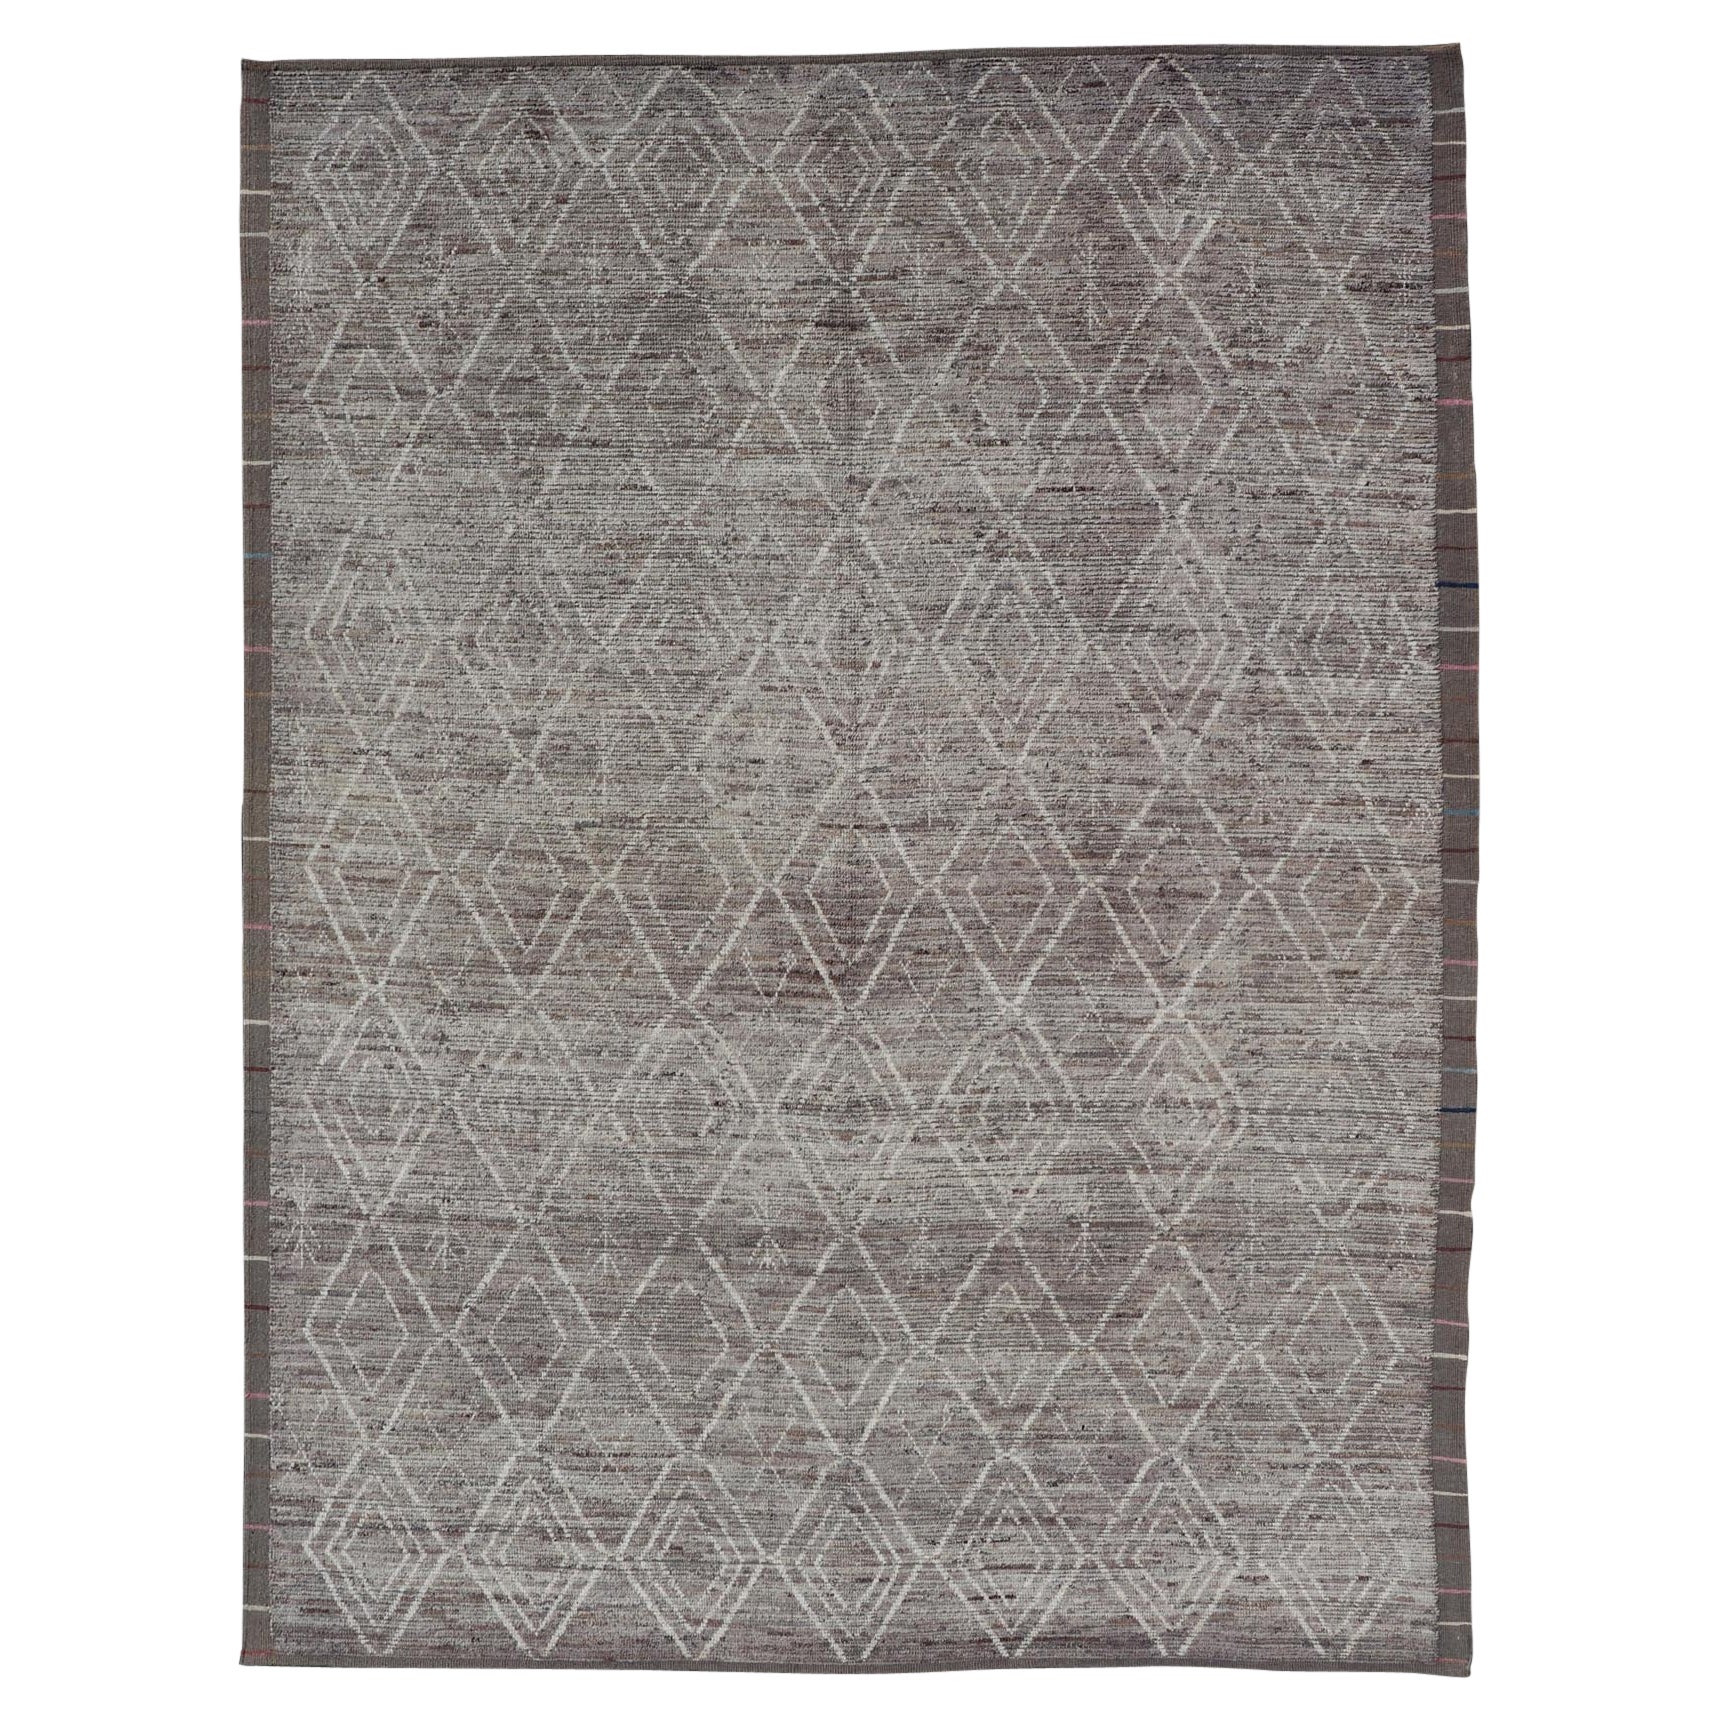 Moderner Contemporary-Teppich in marokkanischem Design in Grau und Creme